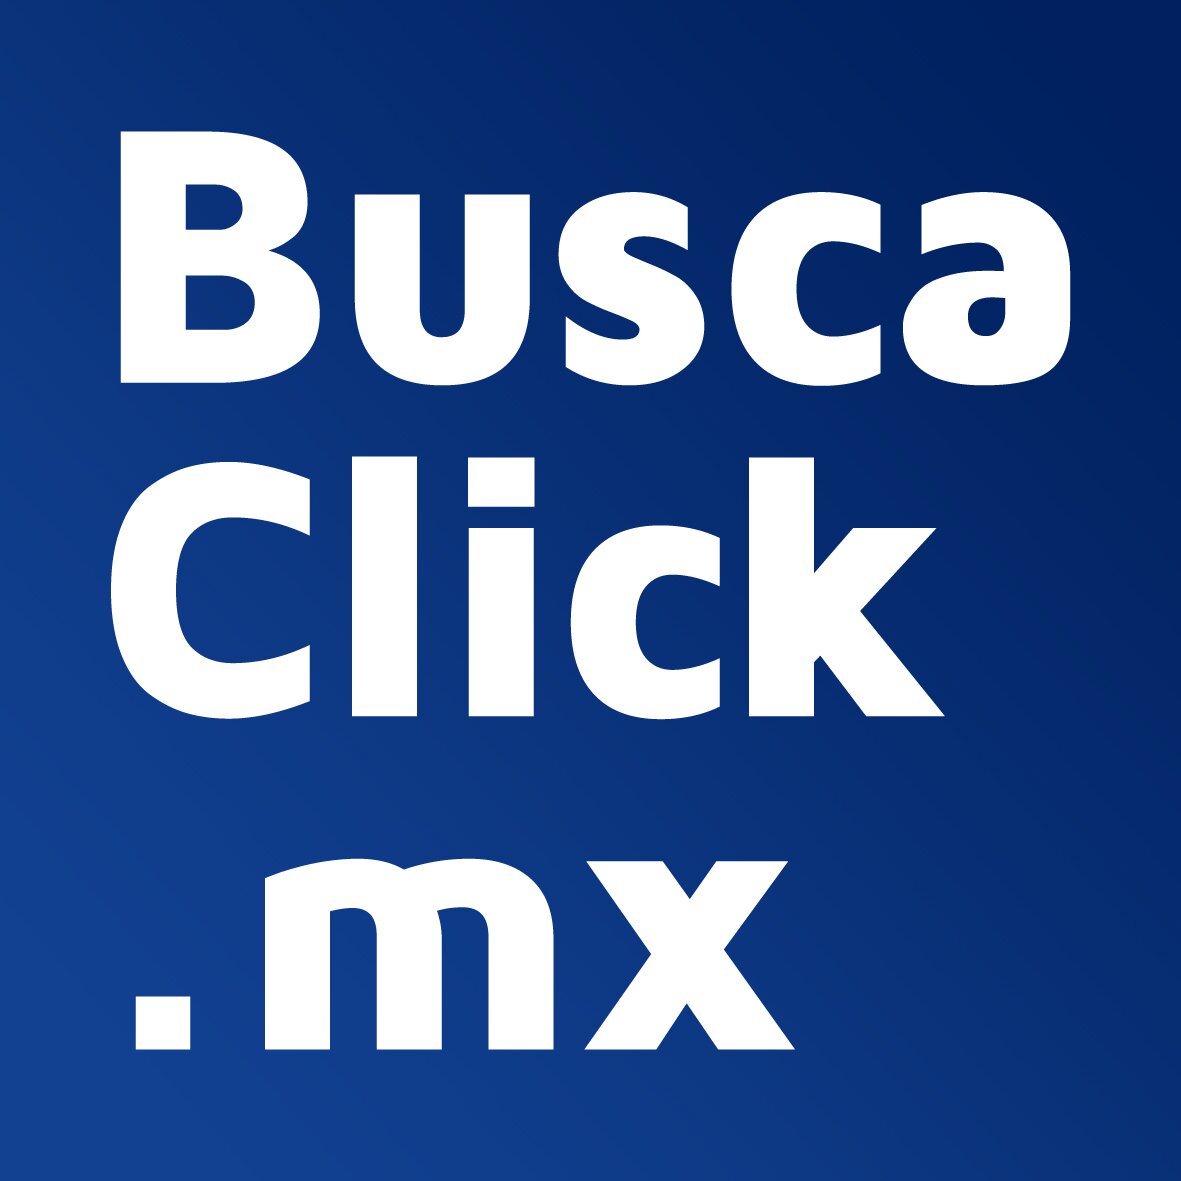 En Buscaclick.mx nuestro propósito es ayudar a la gente a encontrar grandes empresas locales como dentistas , peluqueros, mecánicos, restaurantes y muchos